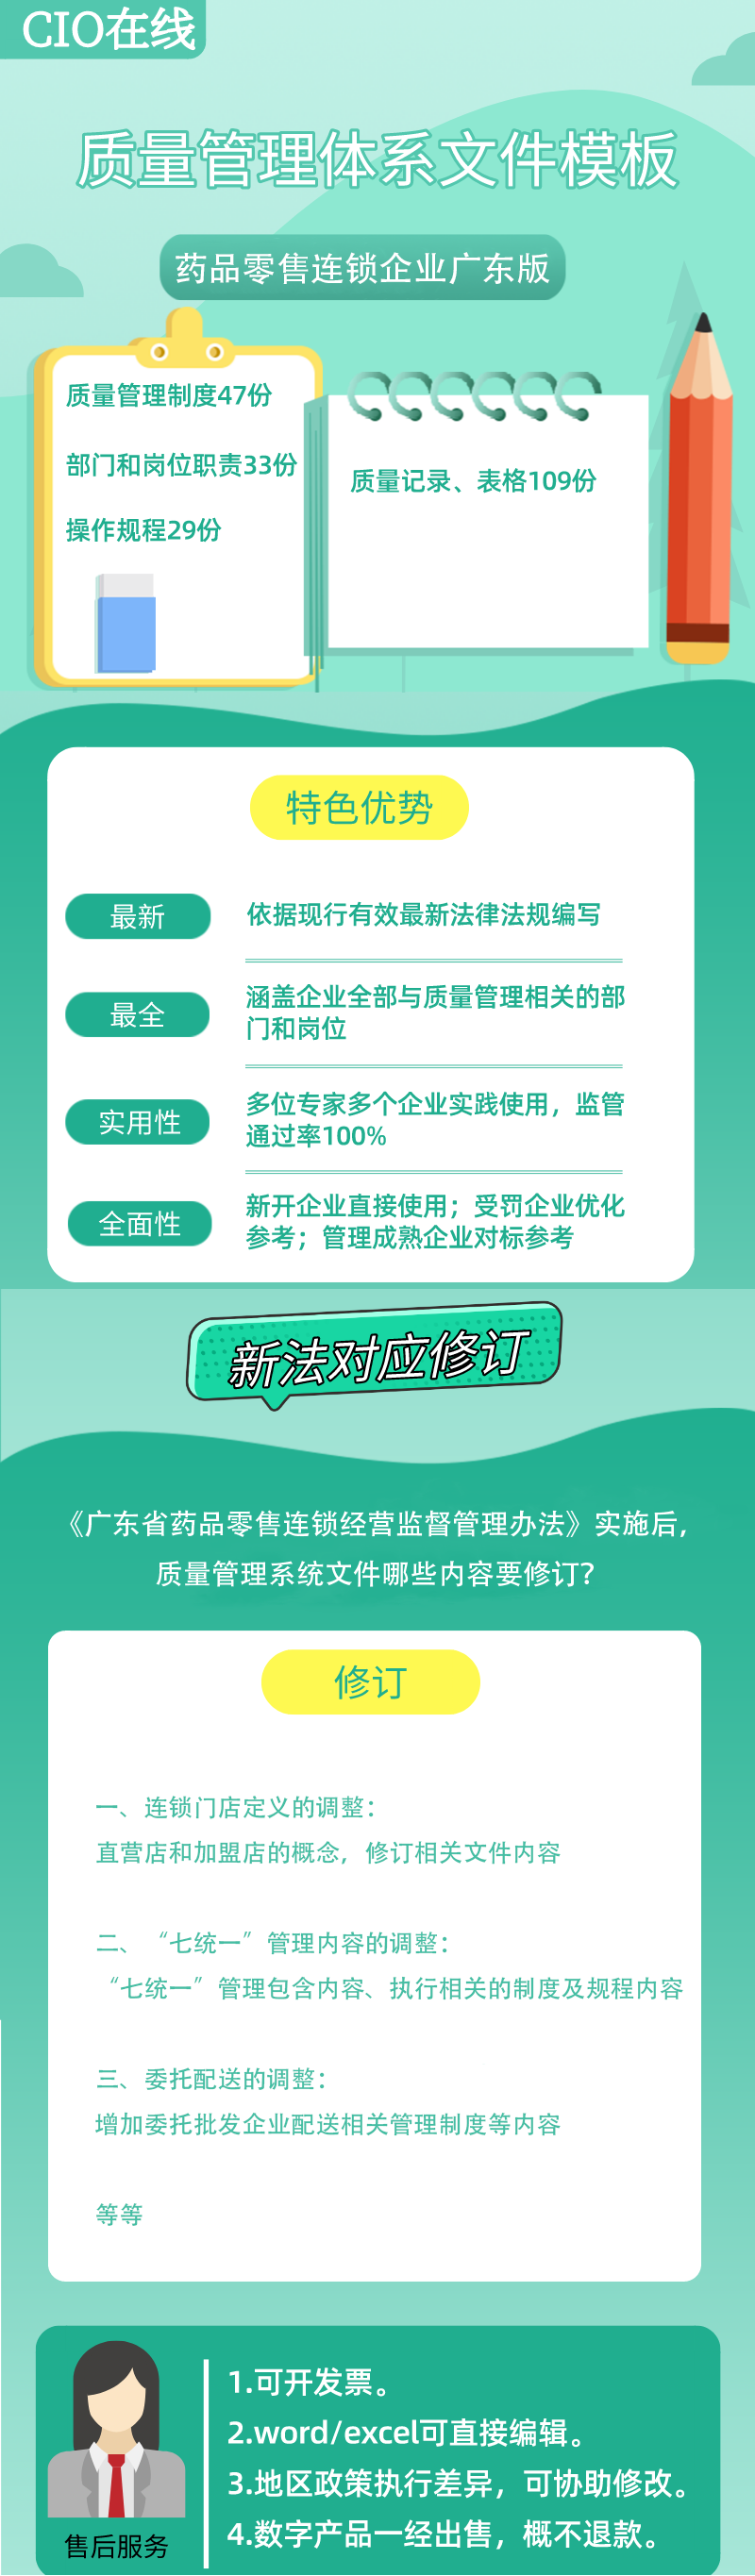 广东版药品连锁的封面图.png